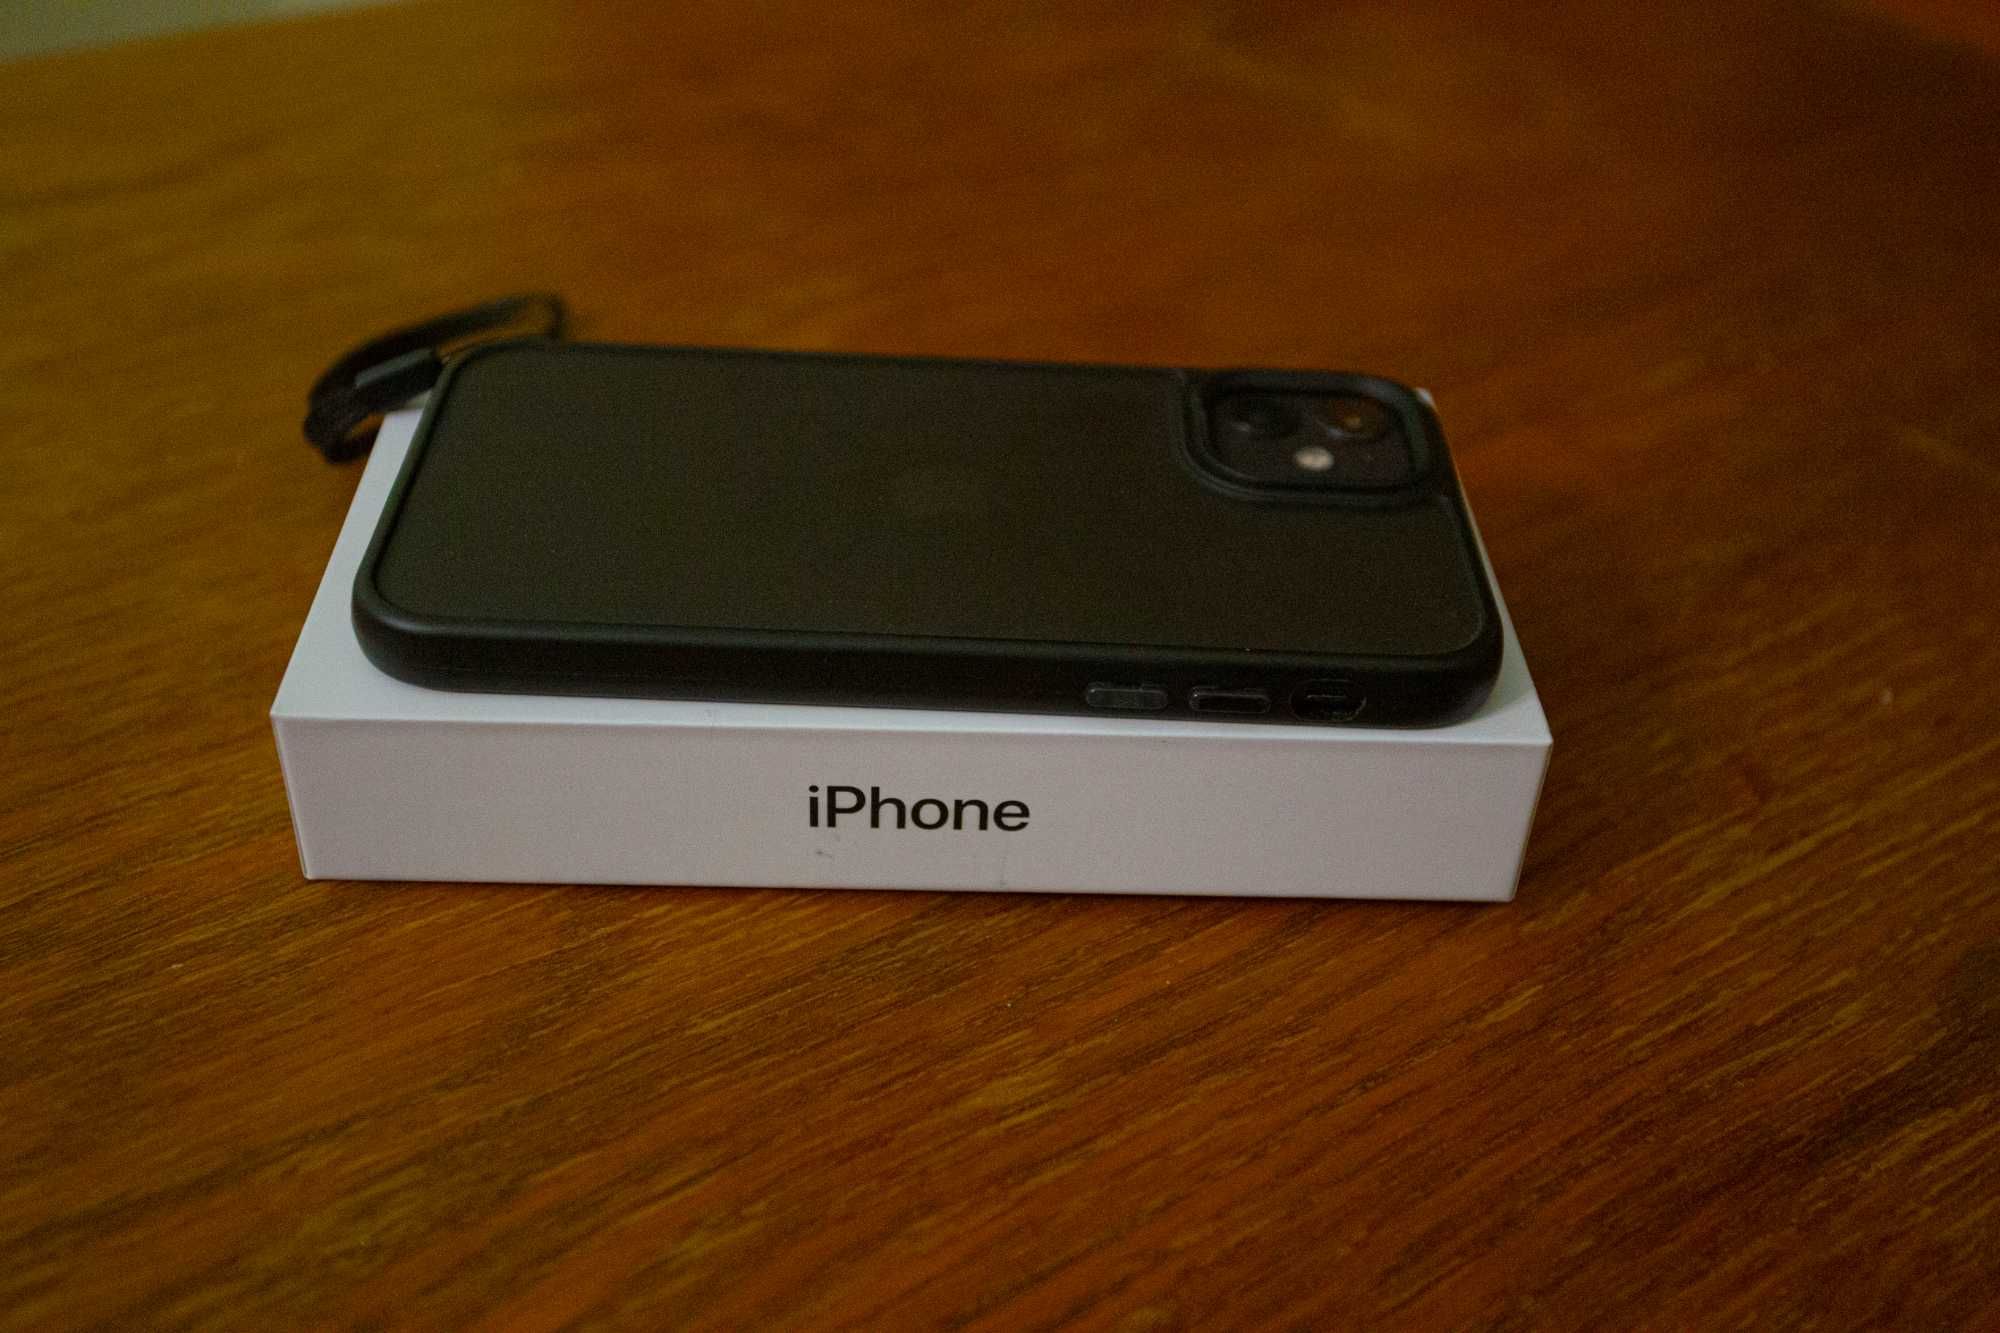 iPhone 11 идеал - Официальный с гарантией чек, коробка, кабель новый!